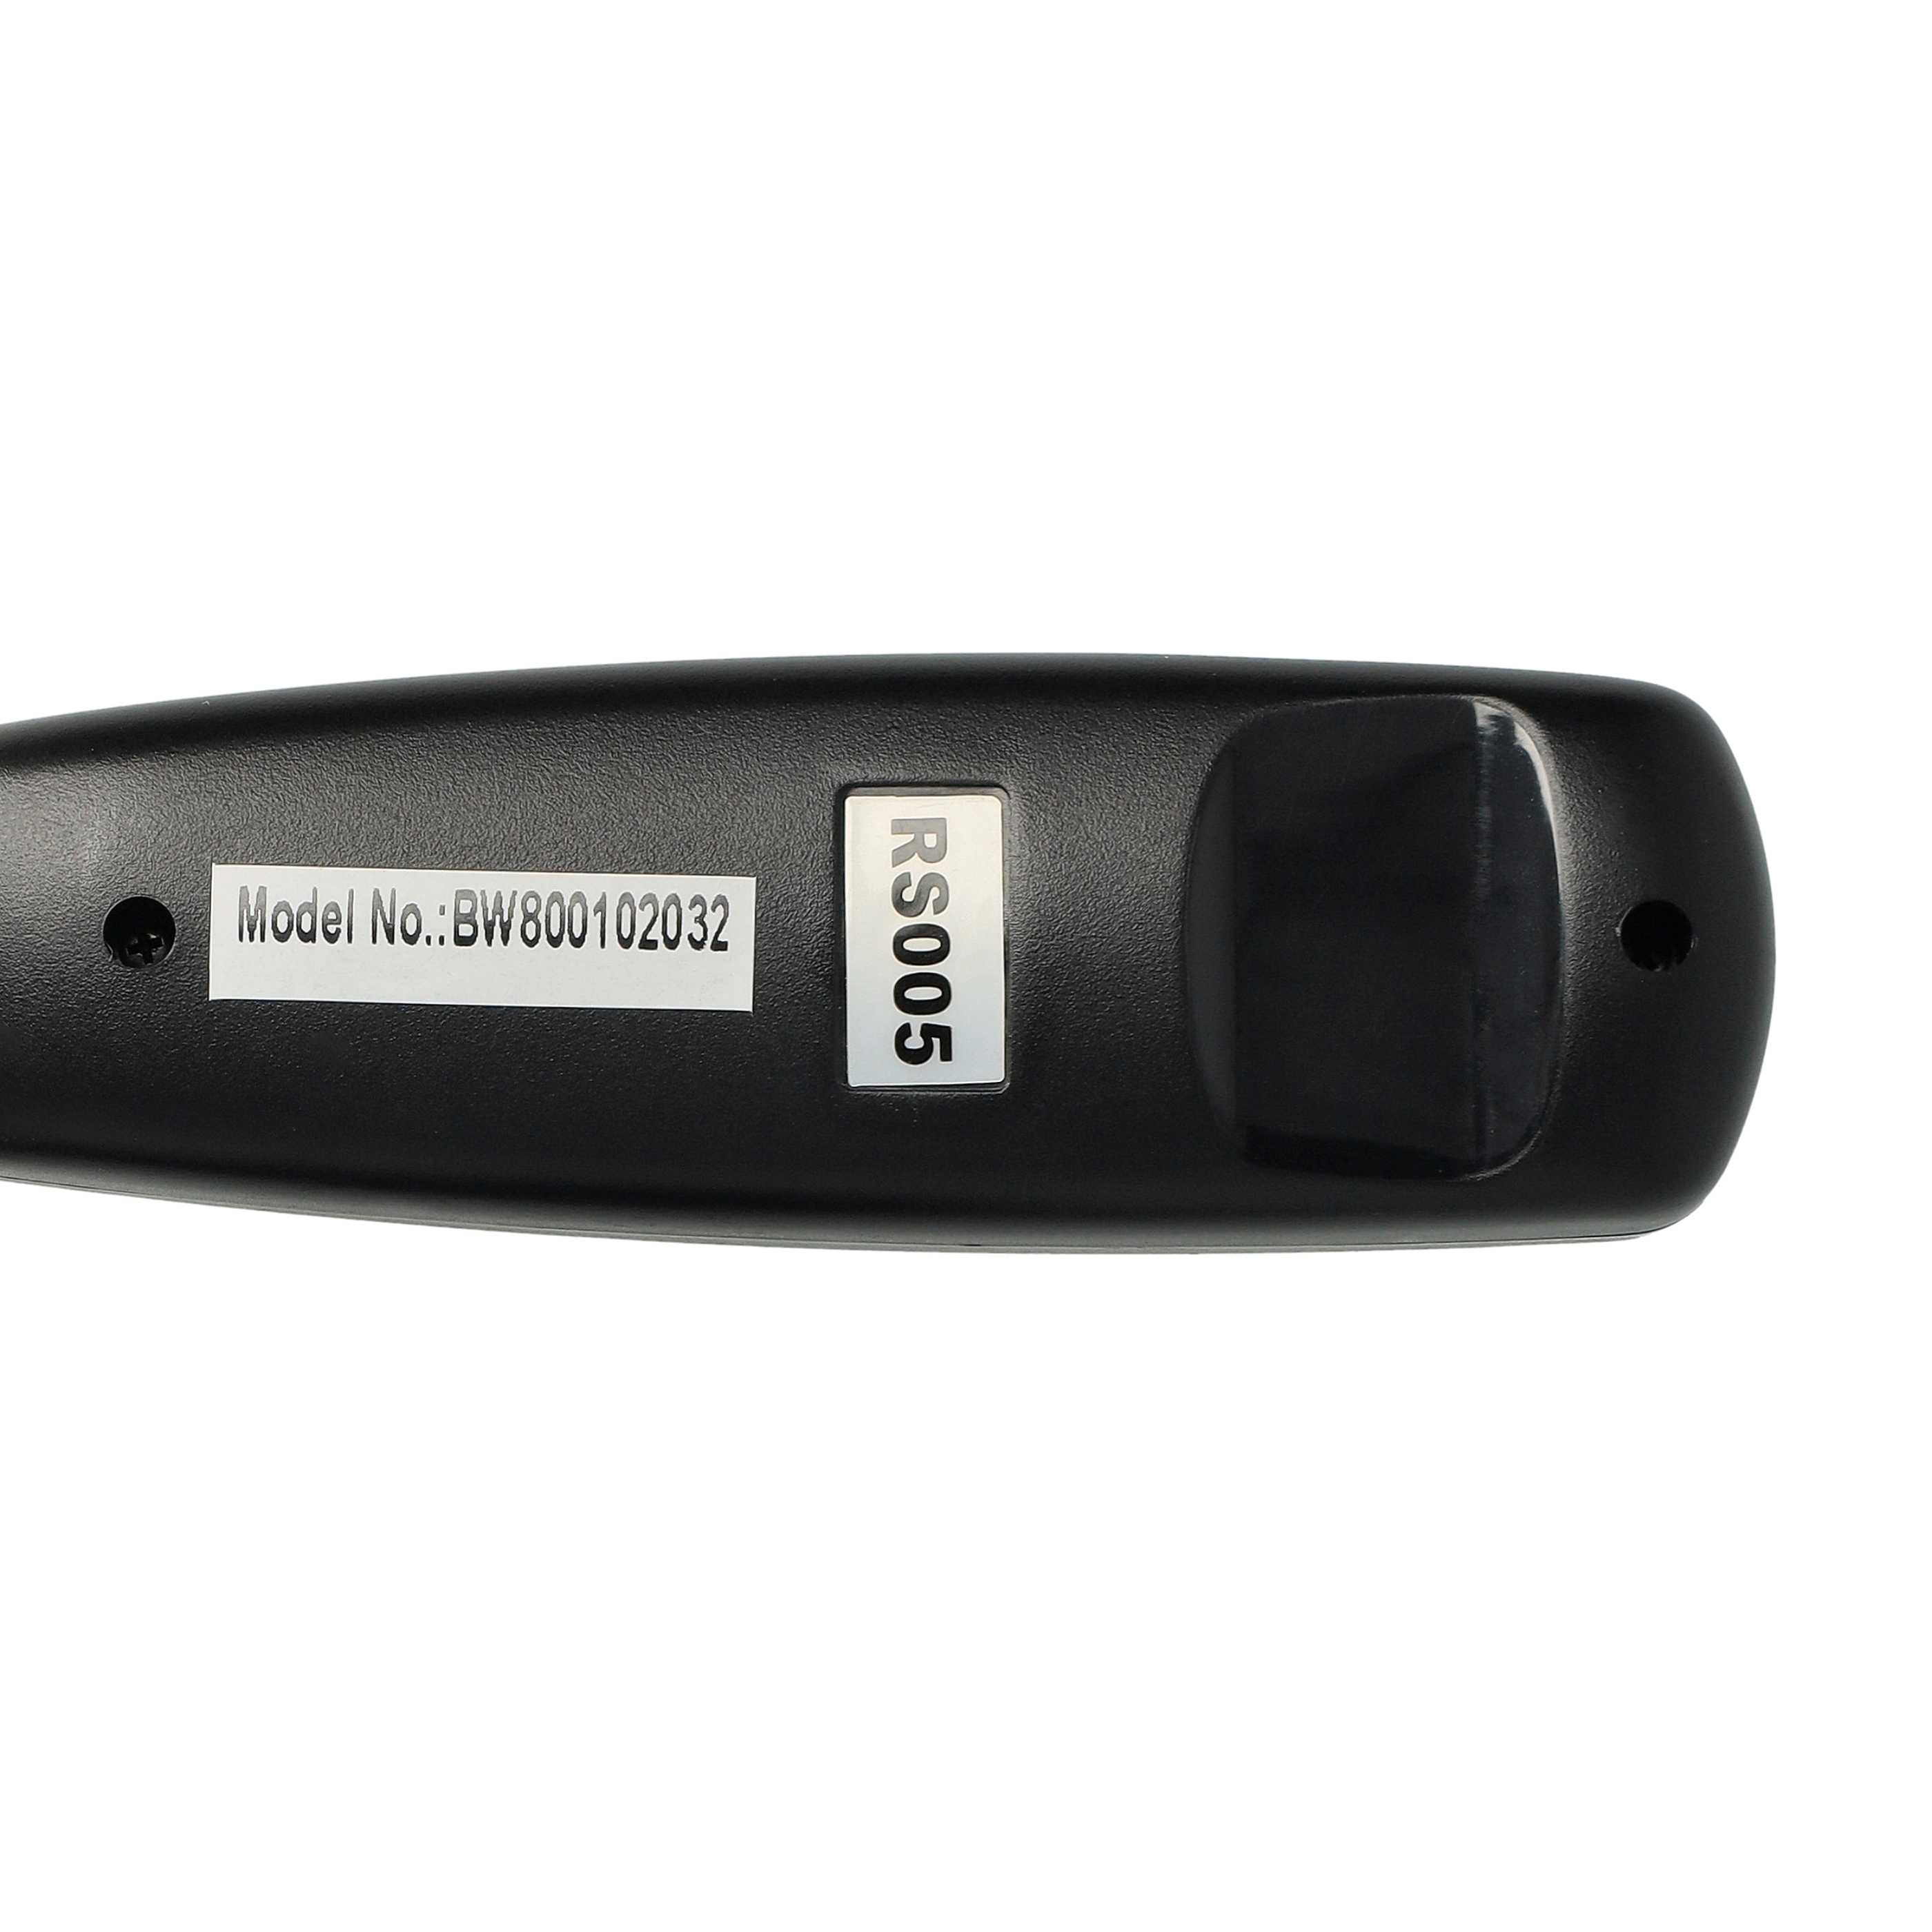 Disparador remoto reemplaza Nikon MC-DC1 para cámara -disparador a 2, cable 1 m